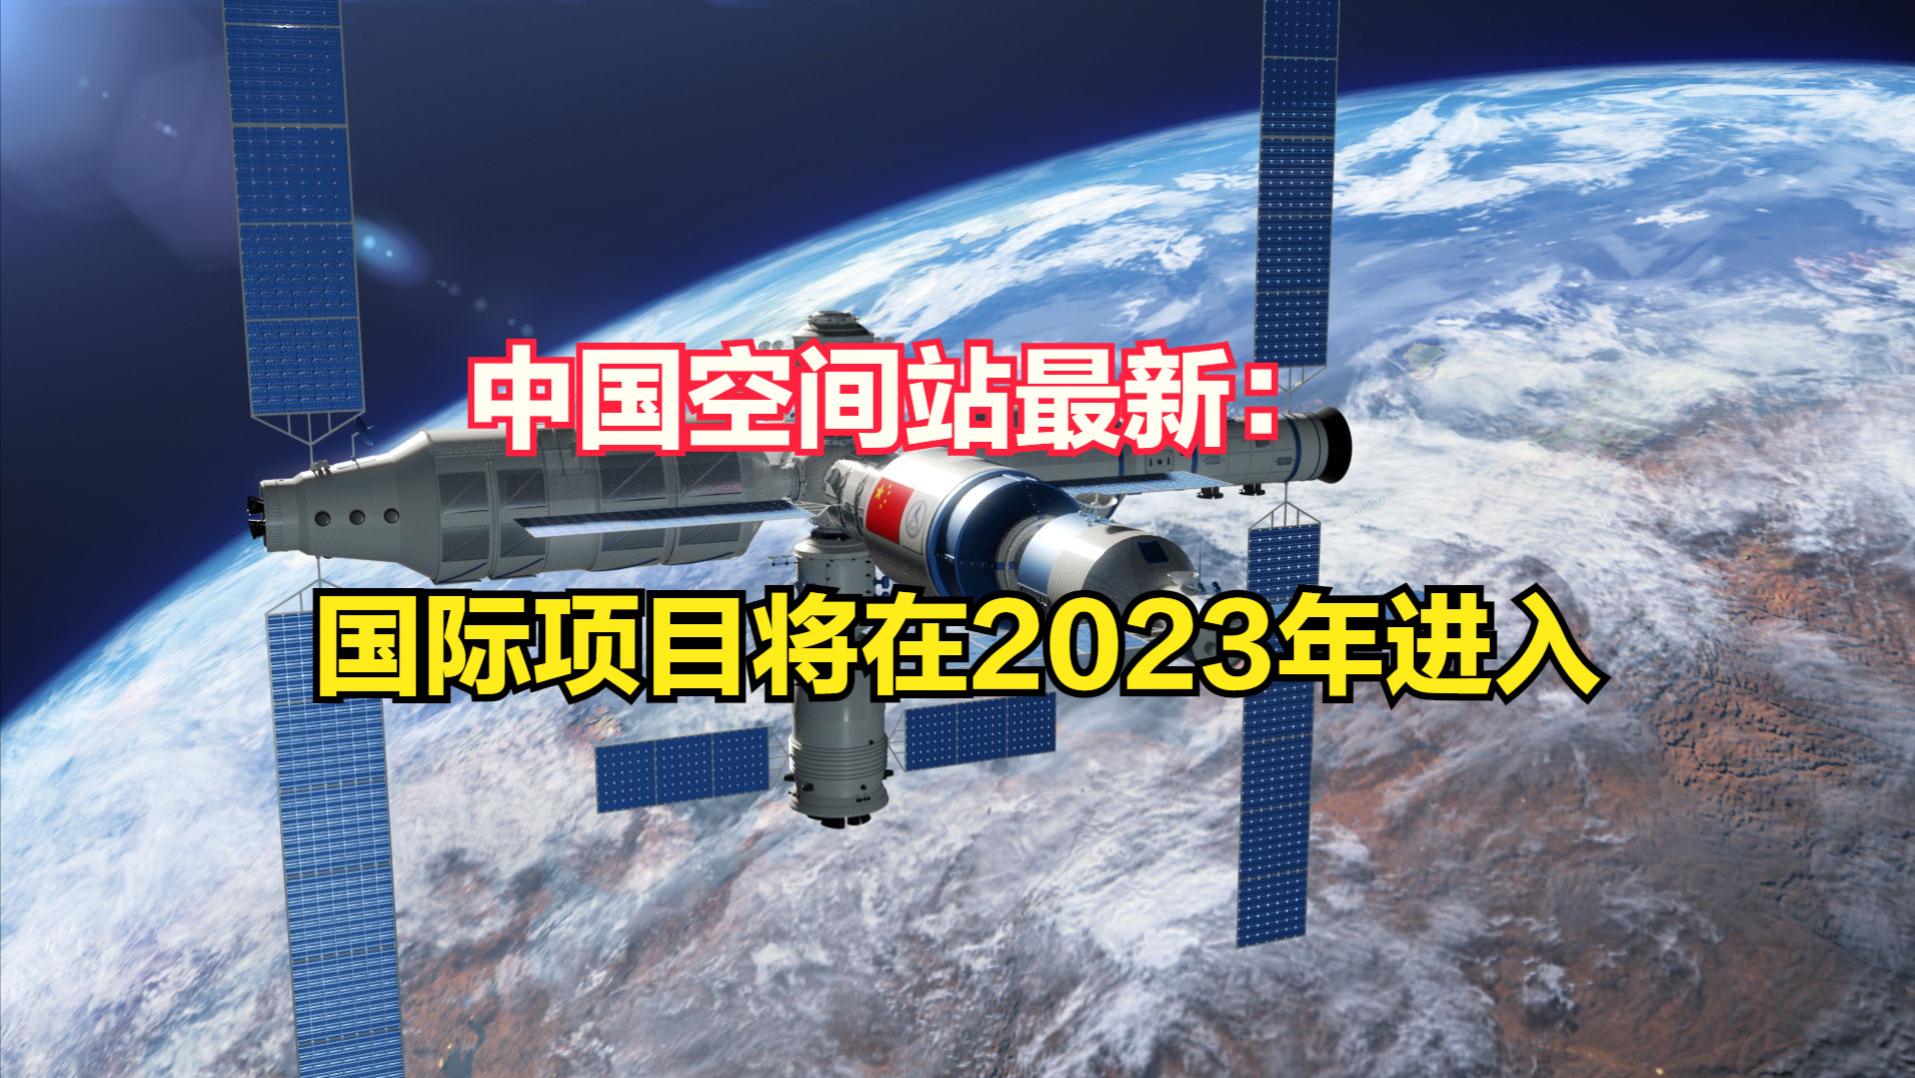 2023年首批国际项目将入驻中国空间站！神舟16号会有外国航天员？